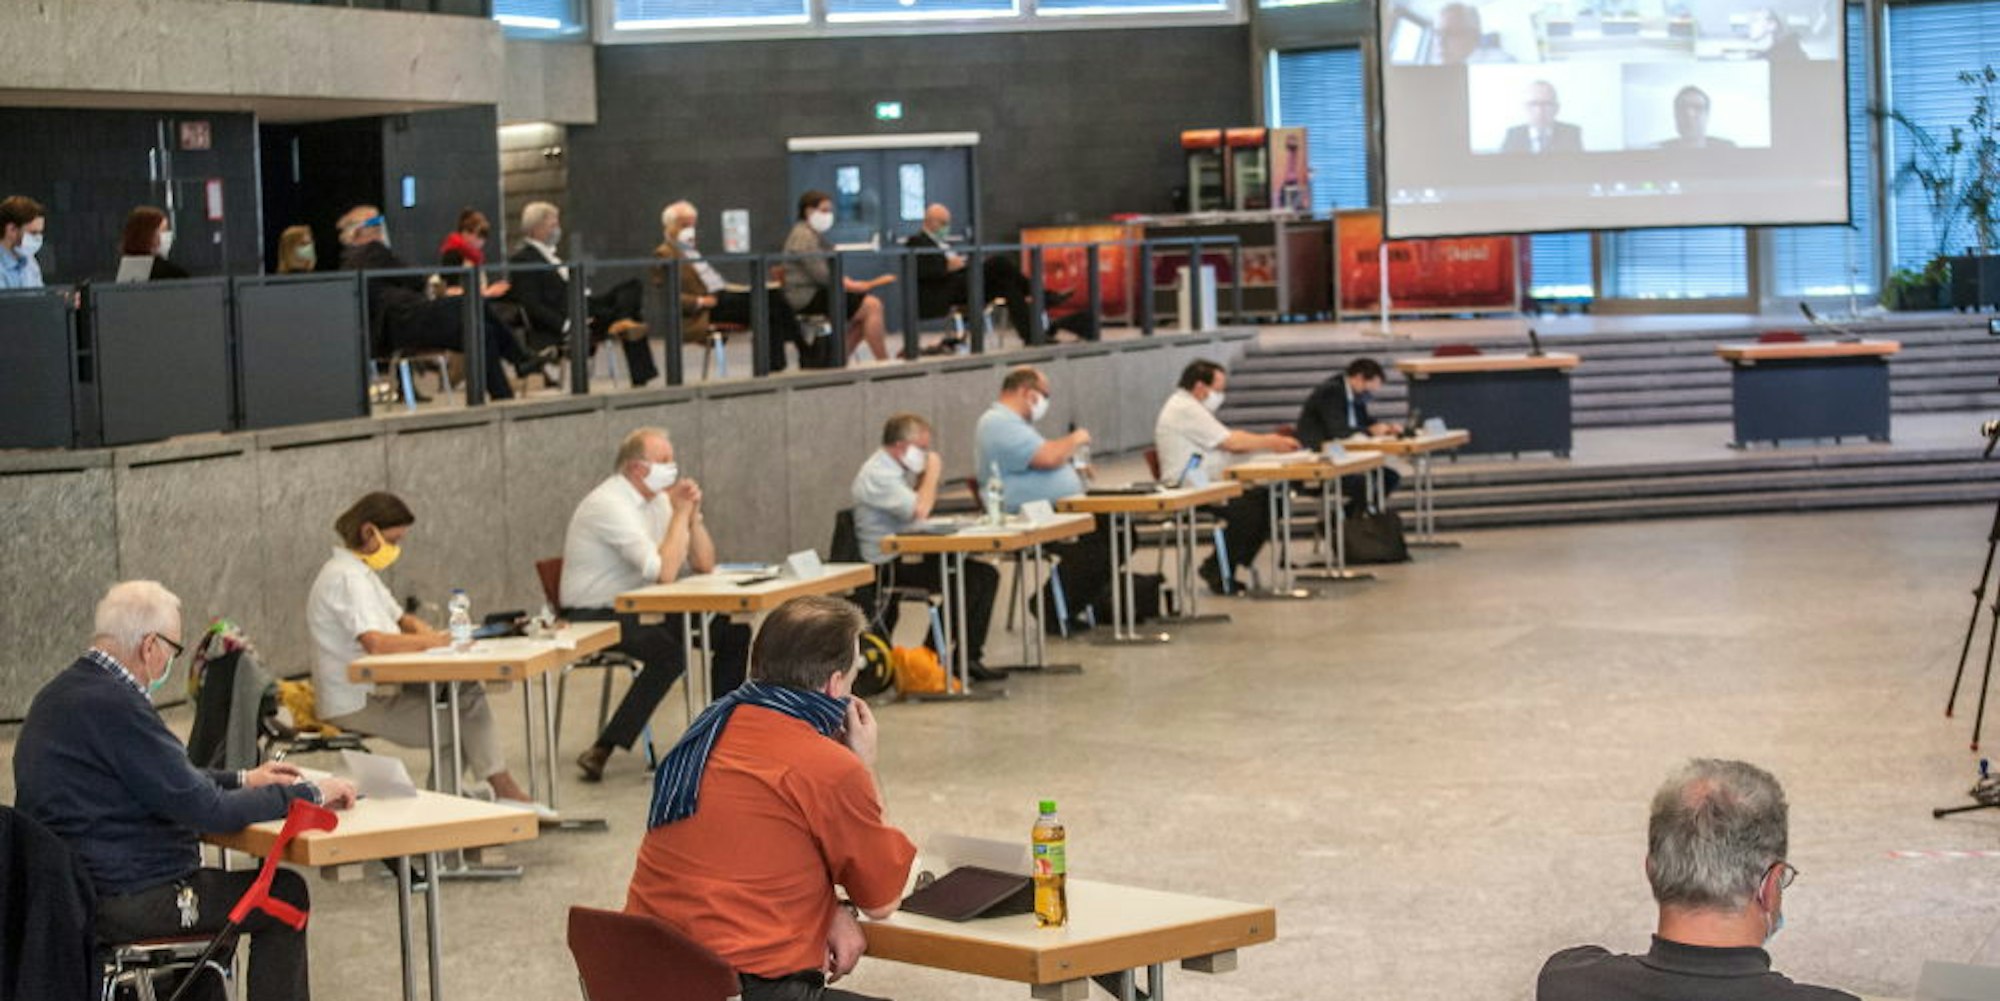 Am 23. April tagte als einziges politisches Gremium in Leverkusen der Hauptausschuss einmal im Terrassensaal des Forum – mit reichlich Sicherheitsabstand.